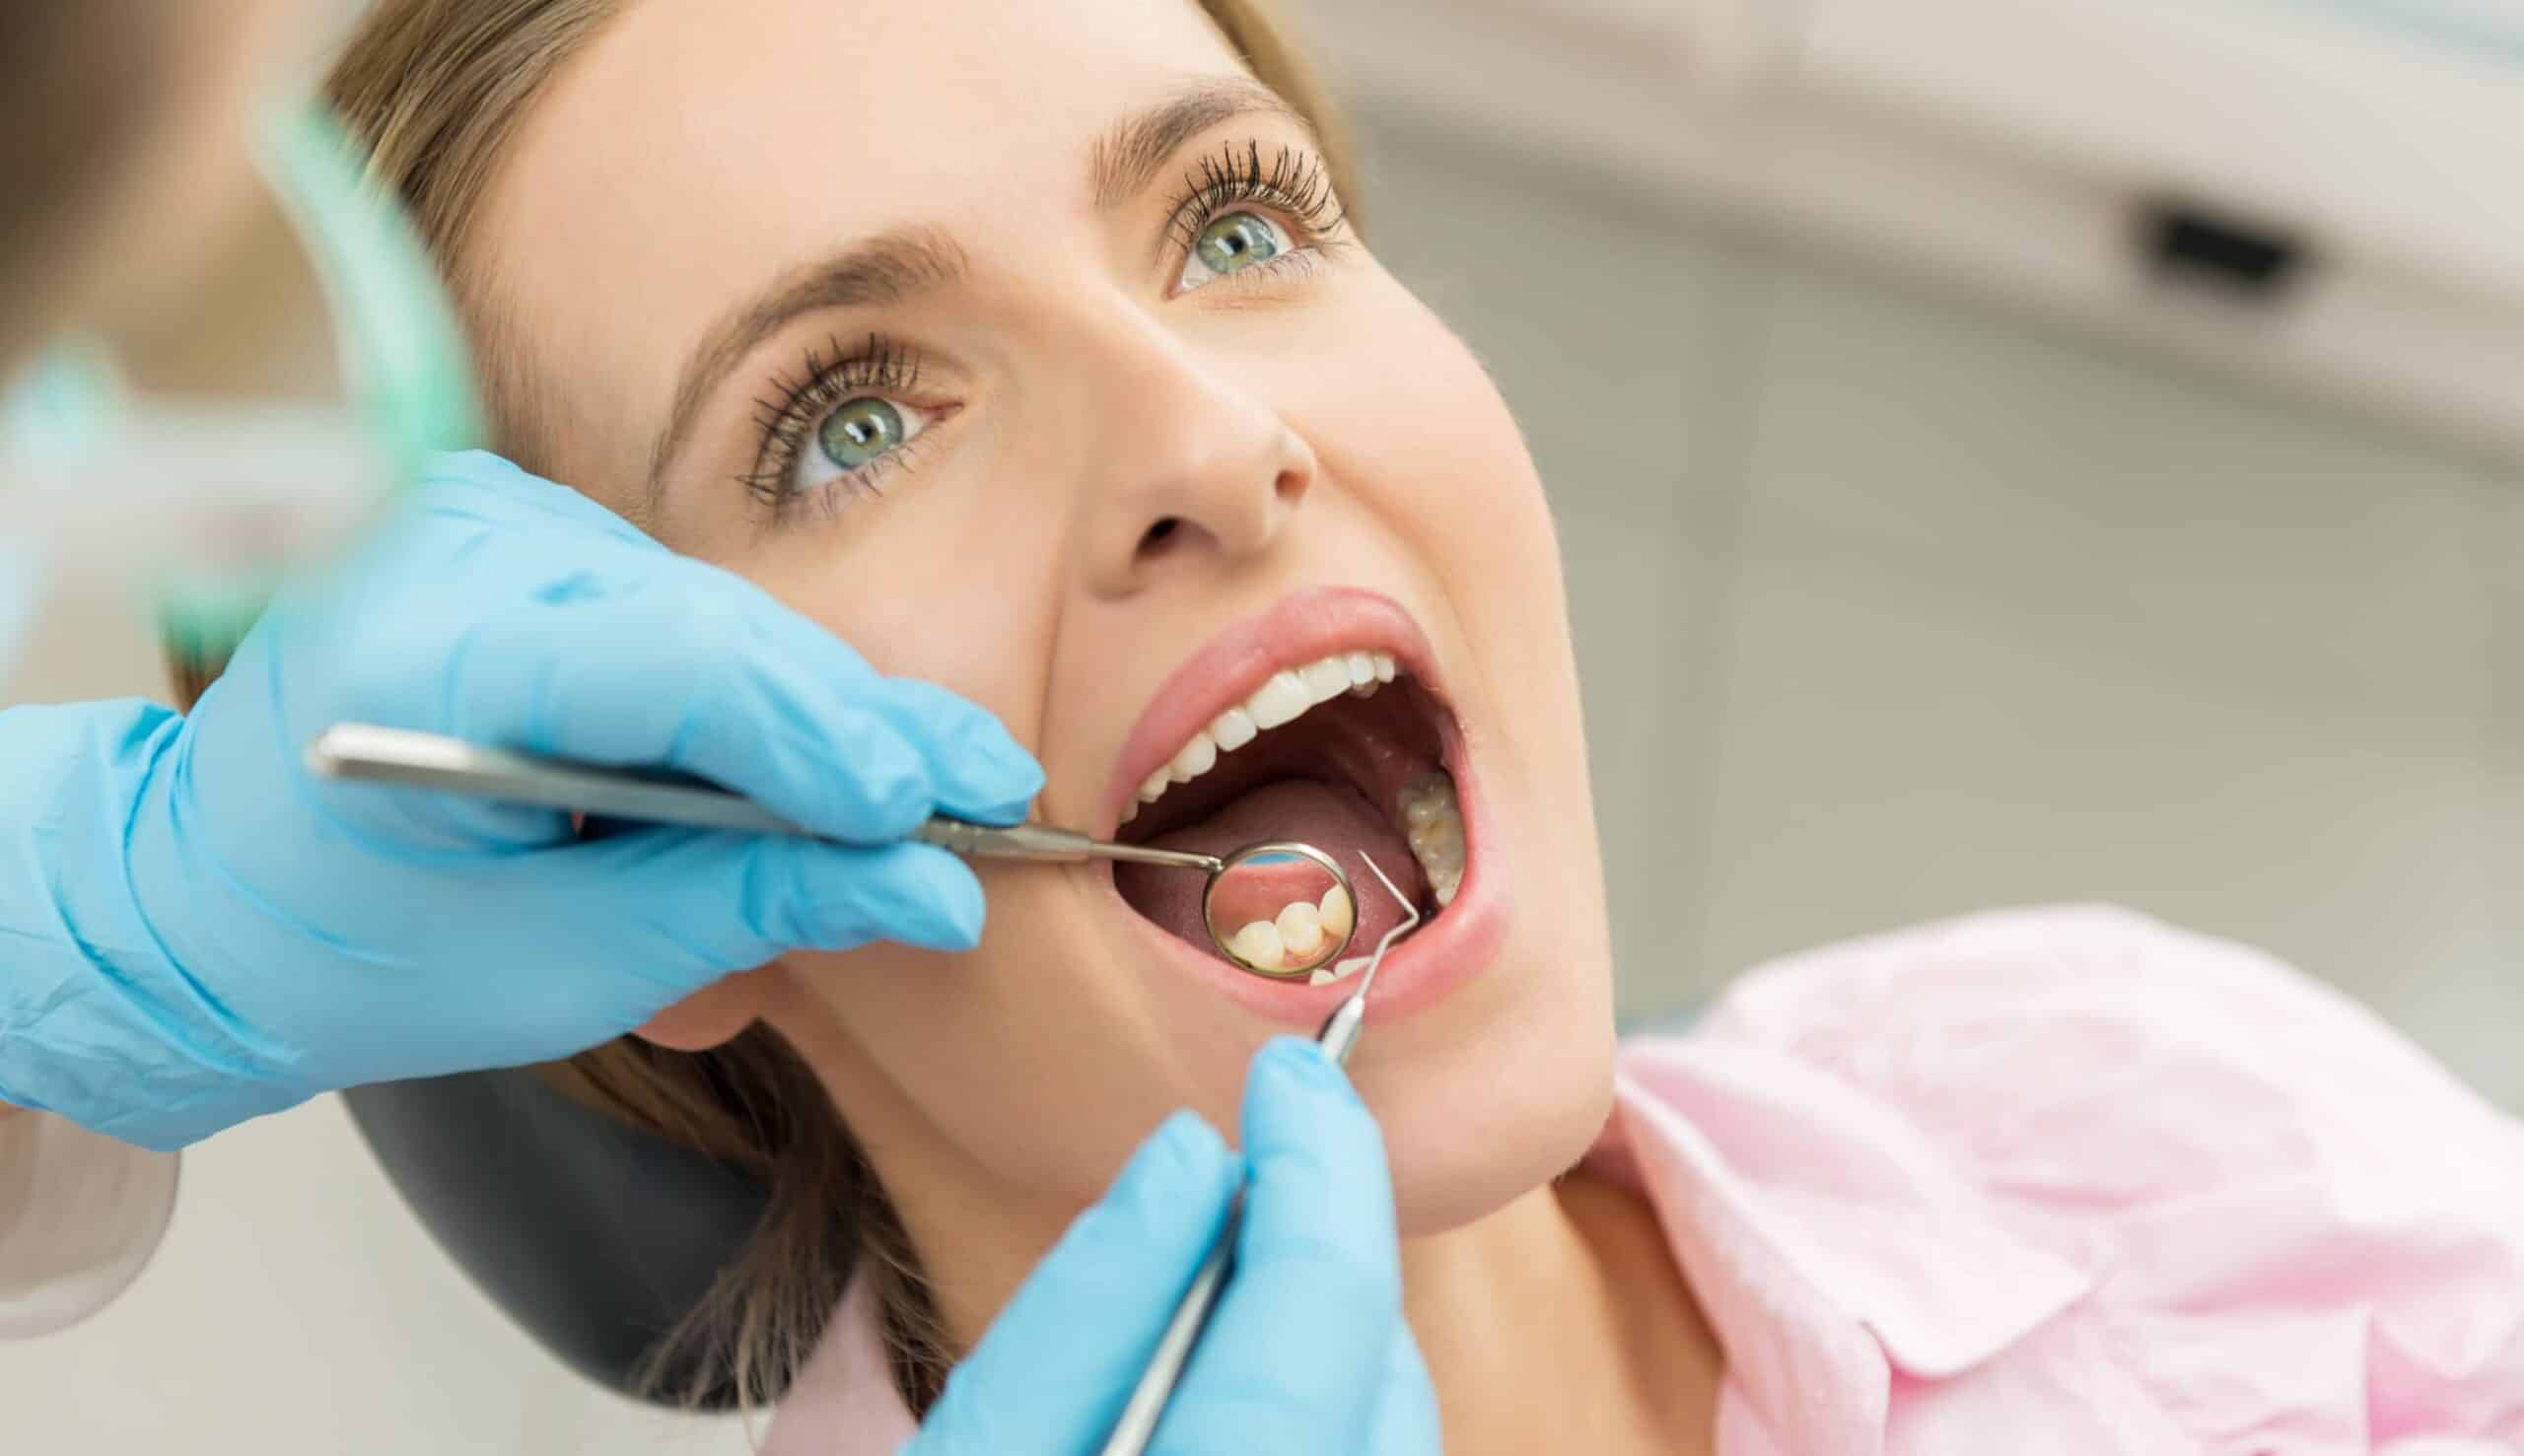 Pour quelles raisons réaliser une greffe osseuse dentaire ? | Clinique dentaire Sana Oris | Paris 8